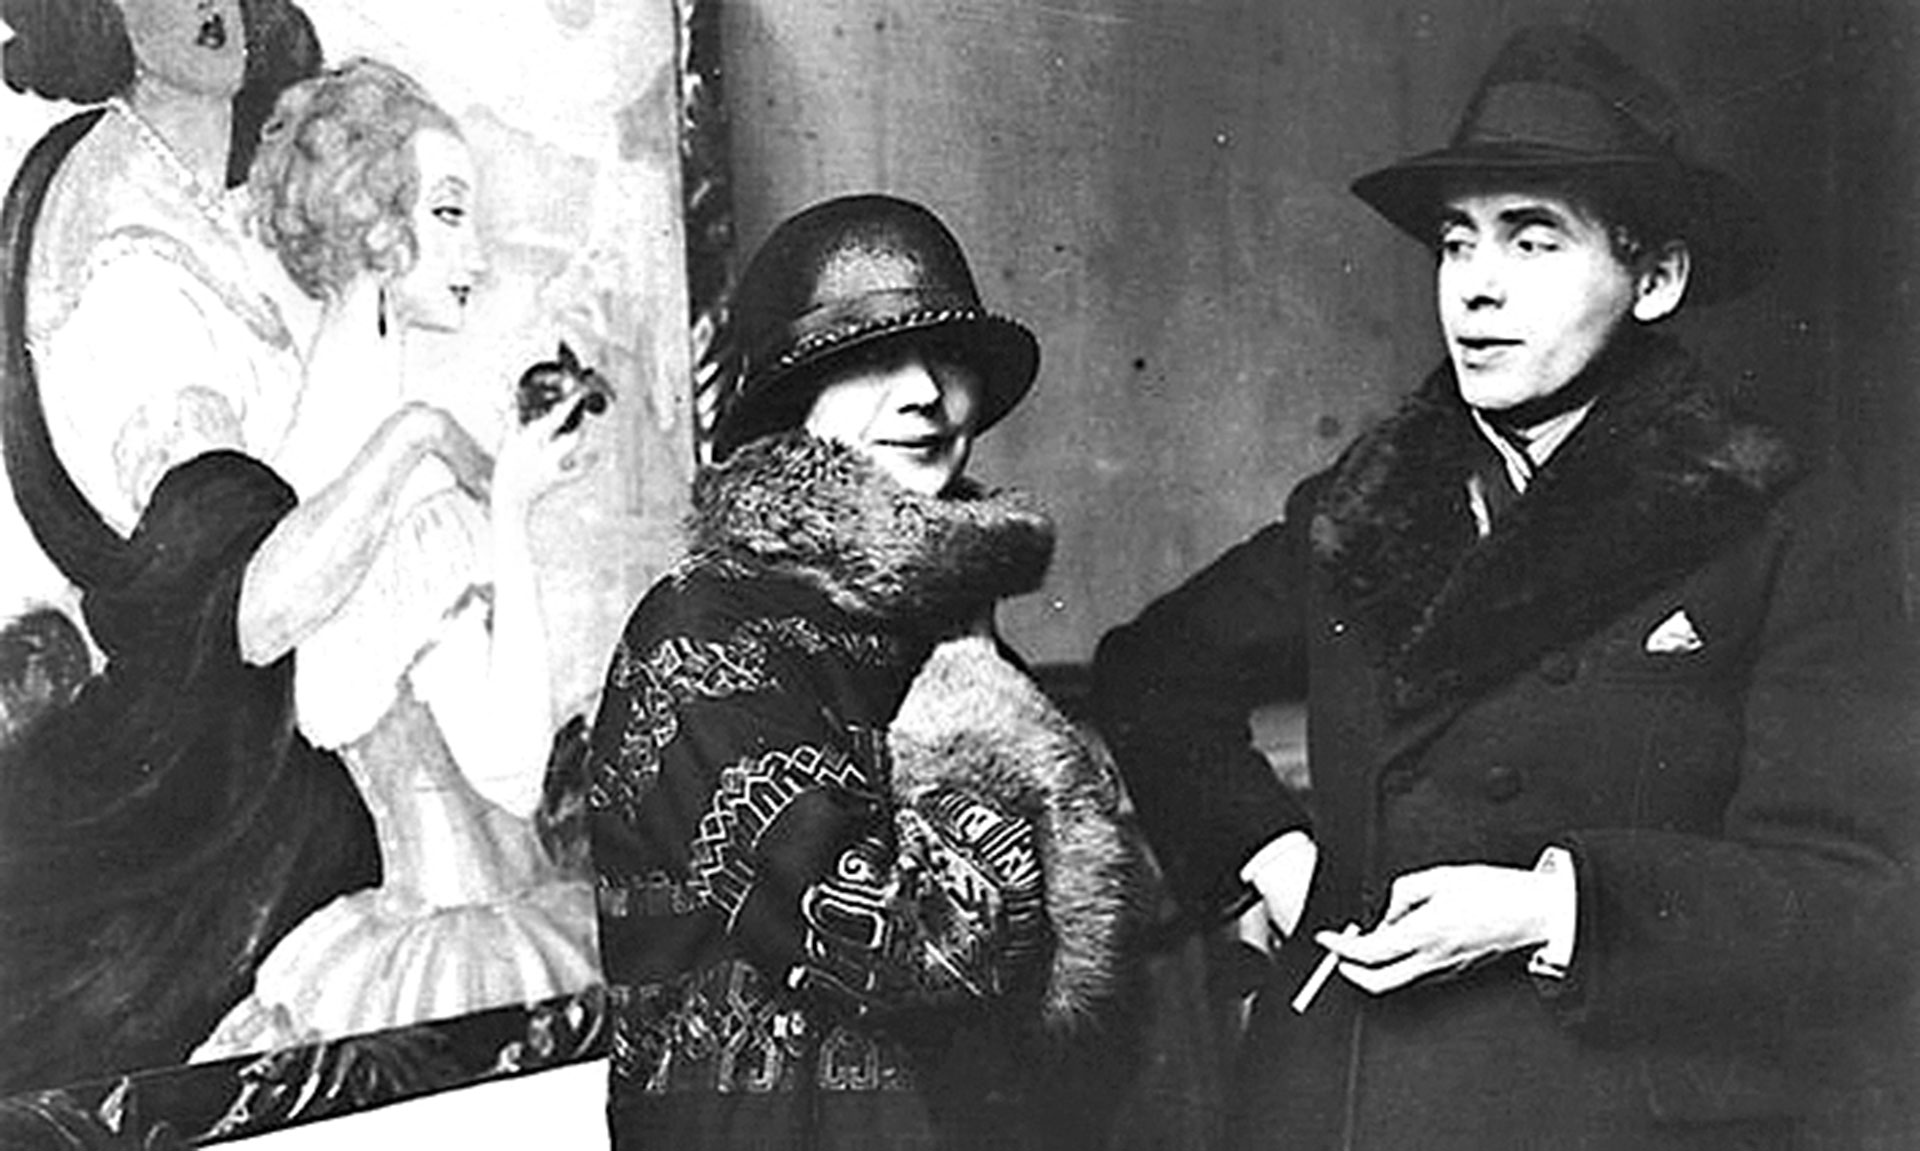 Los pintores Lili (der.)y Gerda Wegener (izq.), los verdaderos protagonistas de La chica danesa.